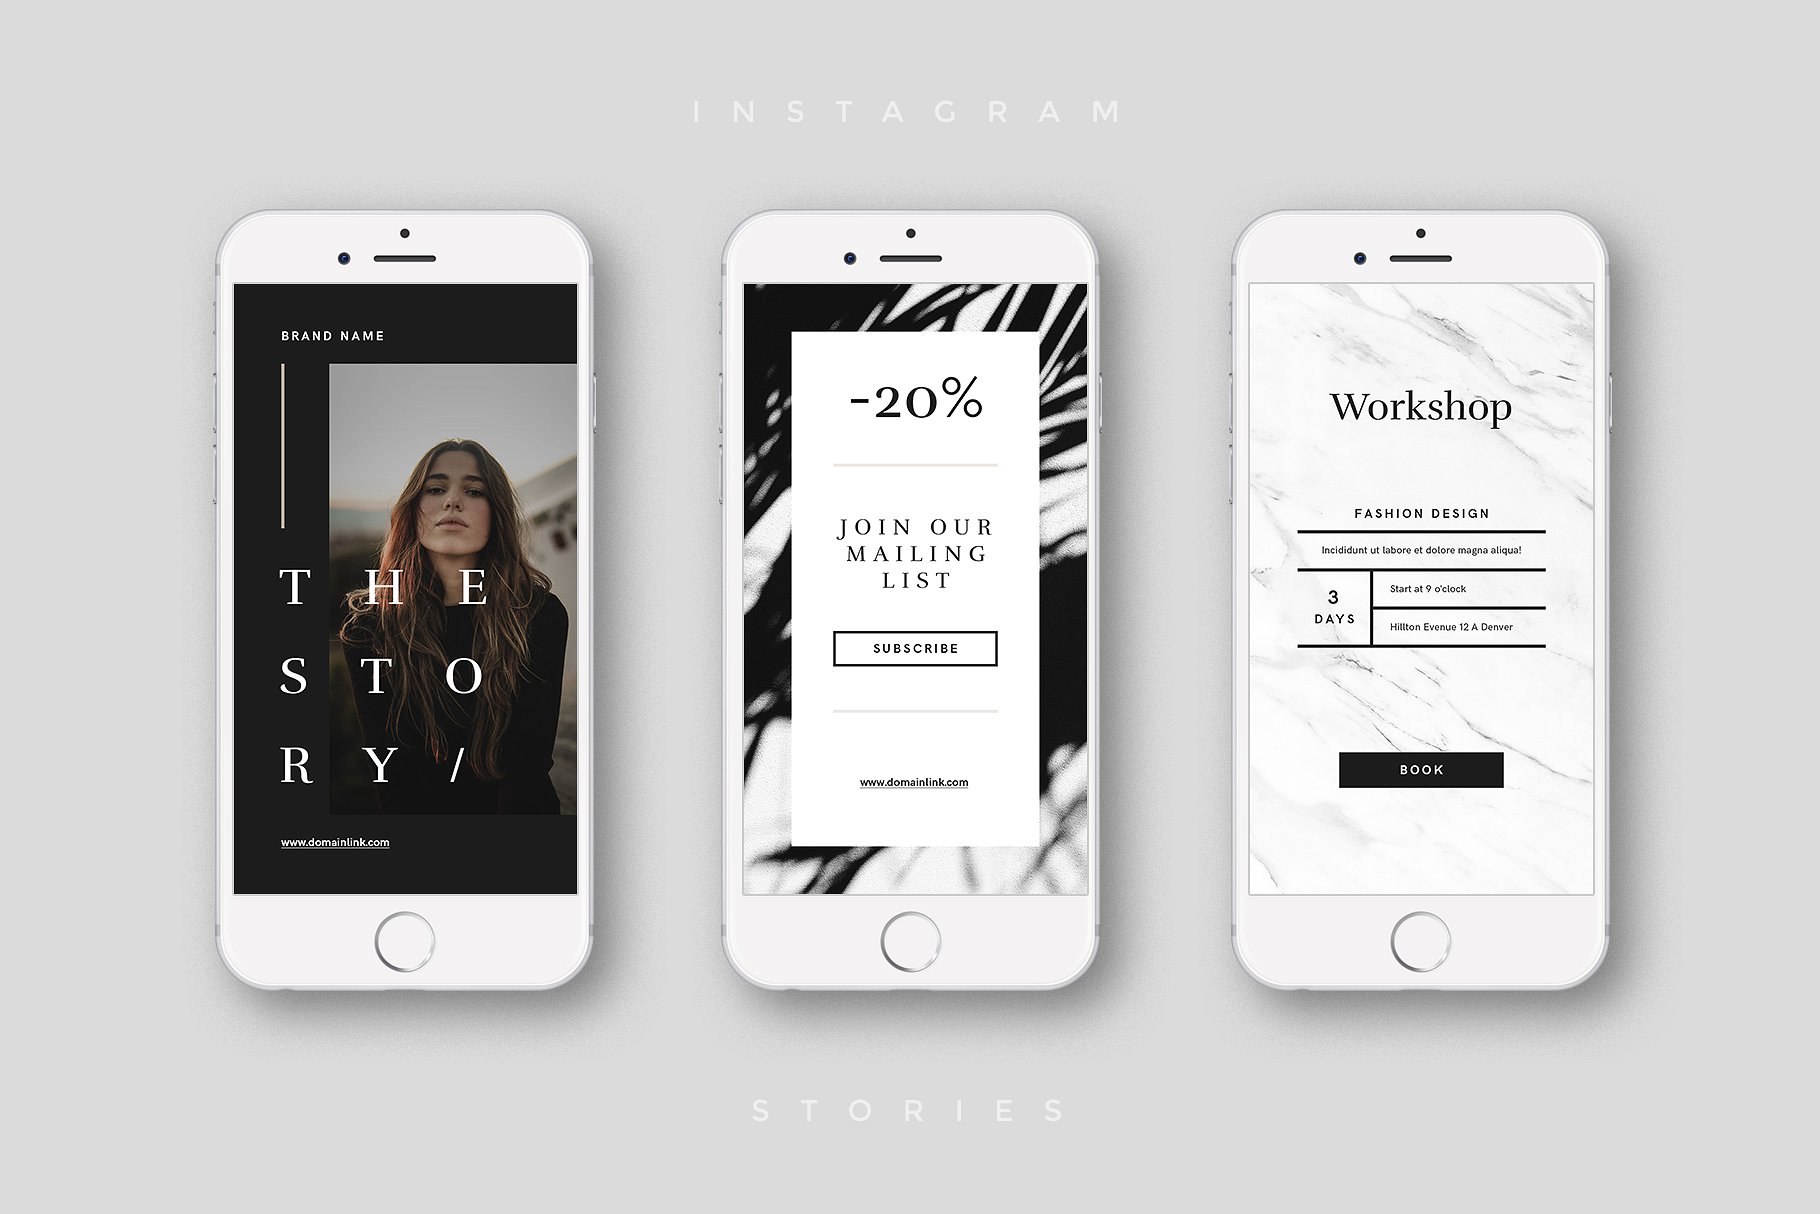 奢侈品电商社交媒体Ins故事贴图模板蚂蚁素材精选 Luxury Instagram Stories Pack插图(4)